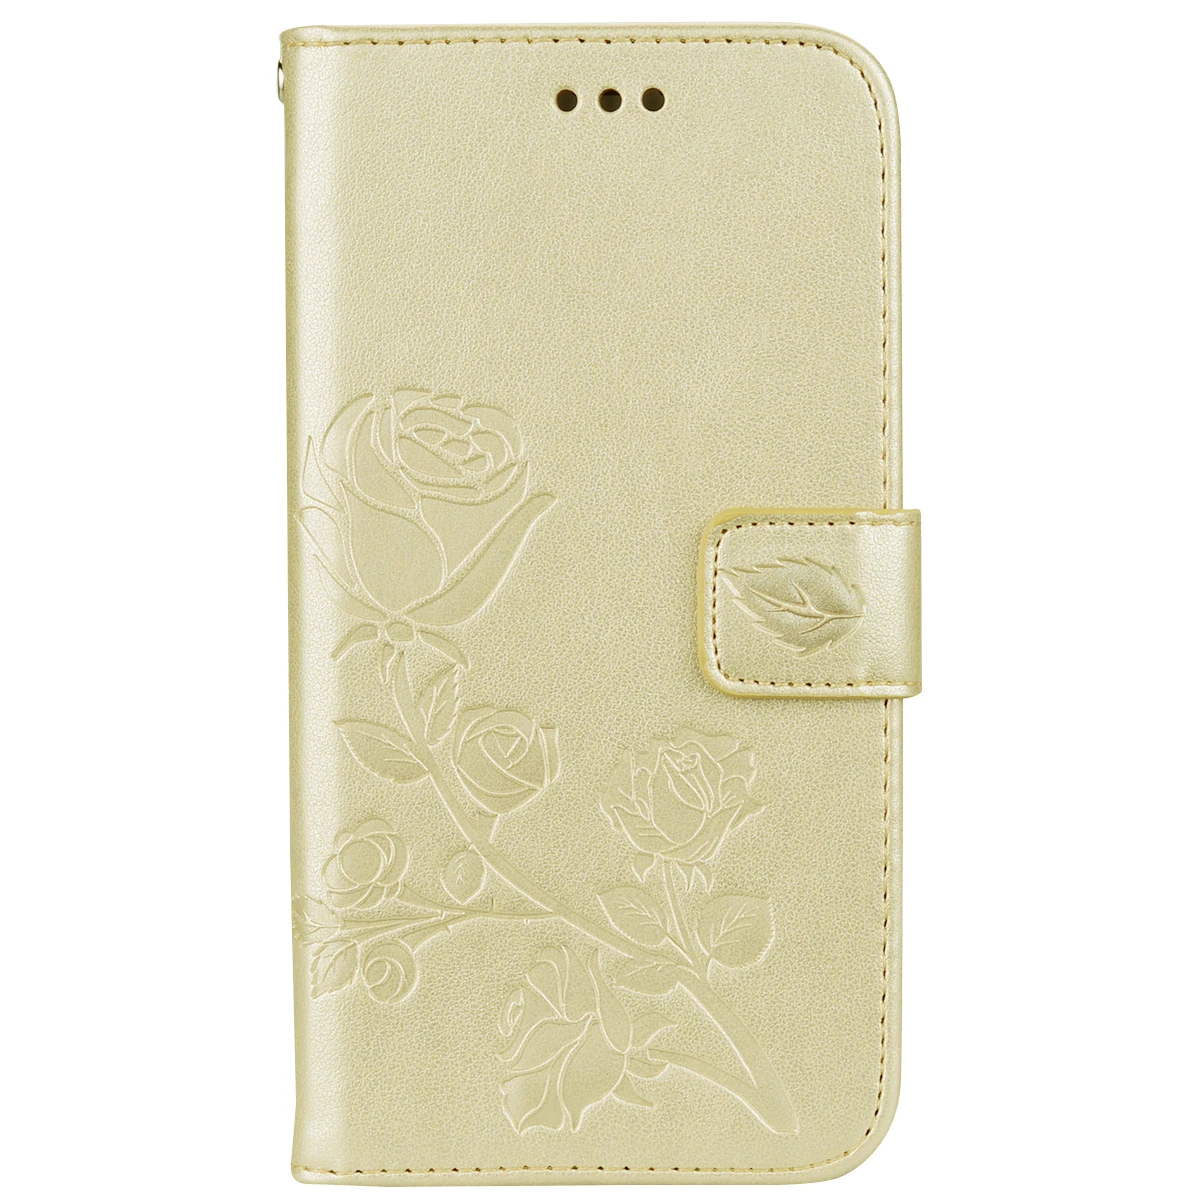 Чехол для телефона s для iPhone X XS розовый кошелек чехол для телефона Флип кожаный чехол для iPhone 5 6 6s 7 8 Plus X XS защитный чехол - Цвет: gold